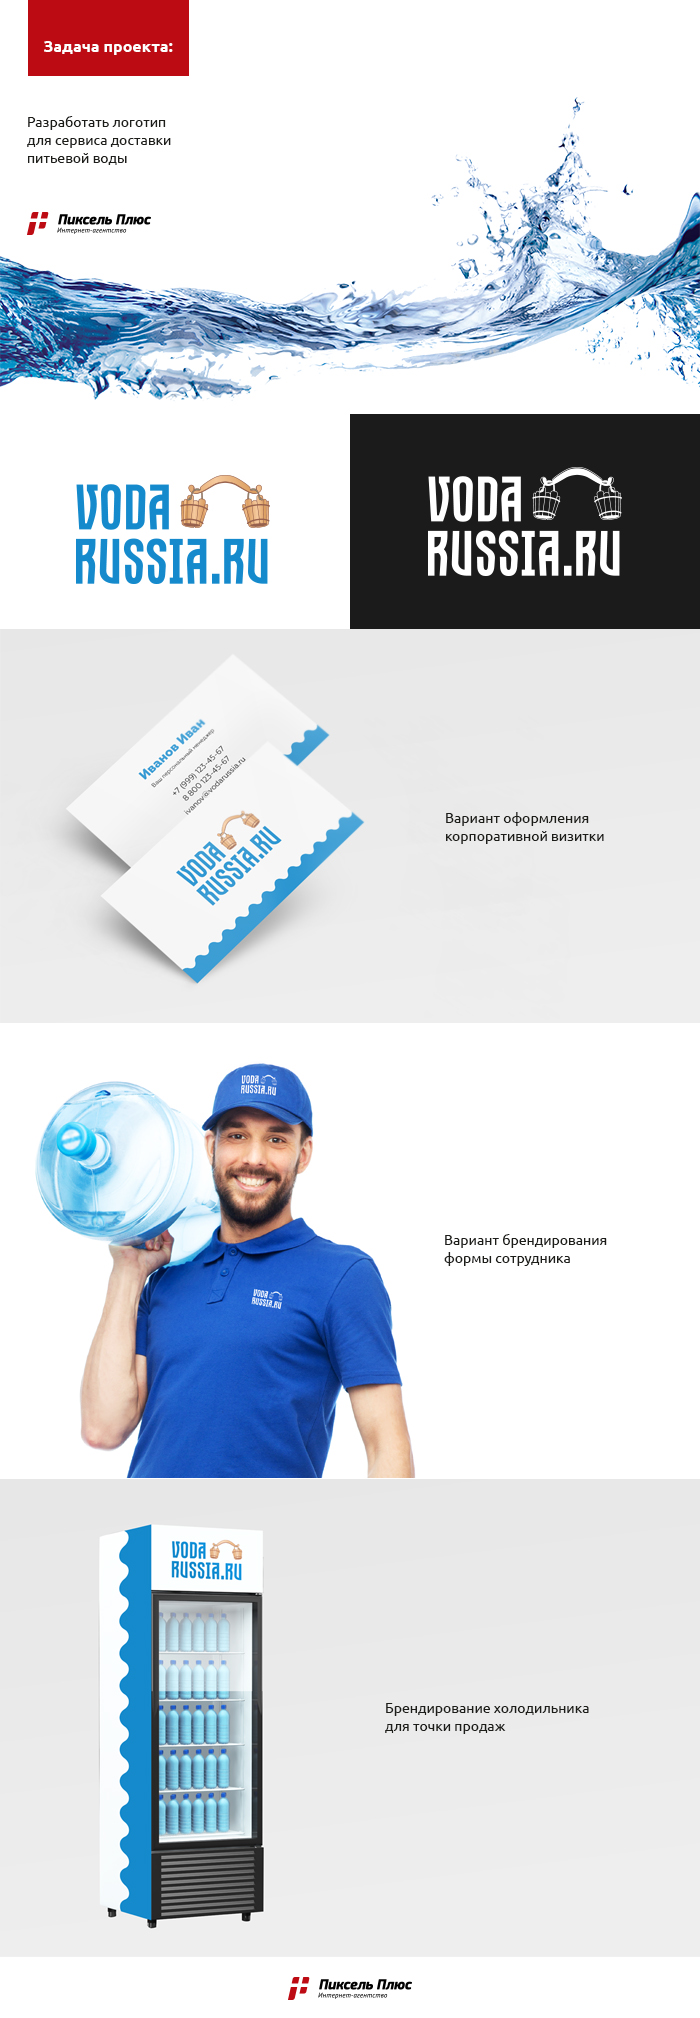 Сервис доставки питьевой воды «Vodarussia.ru»